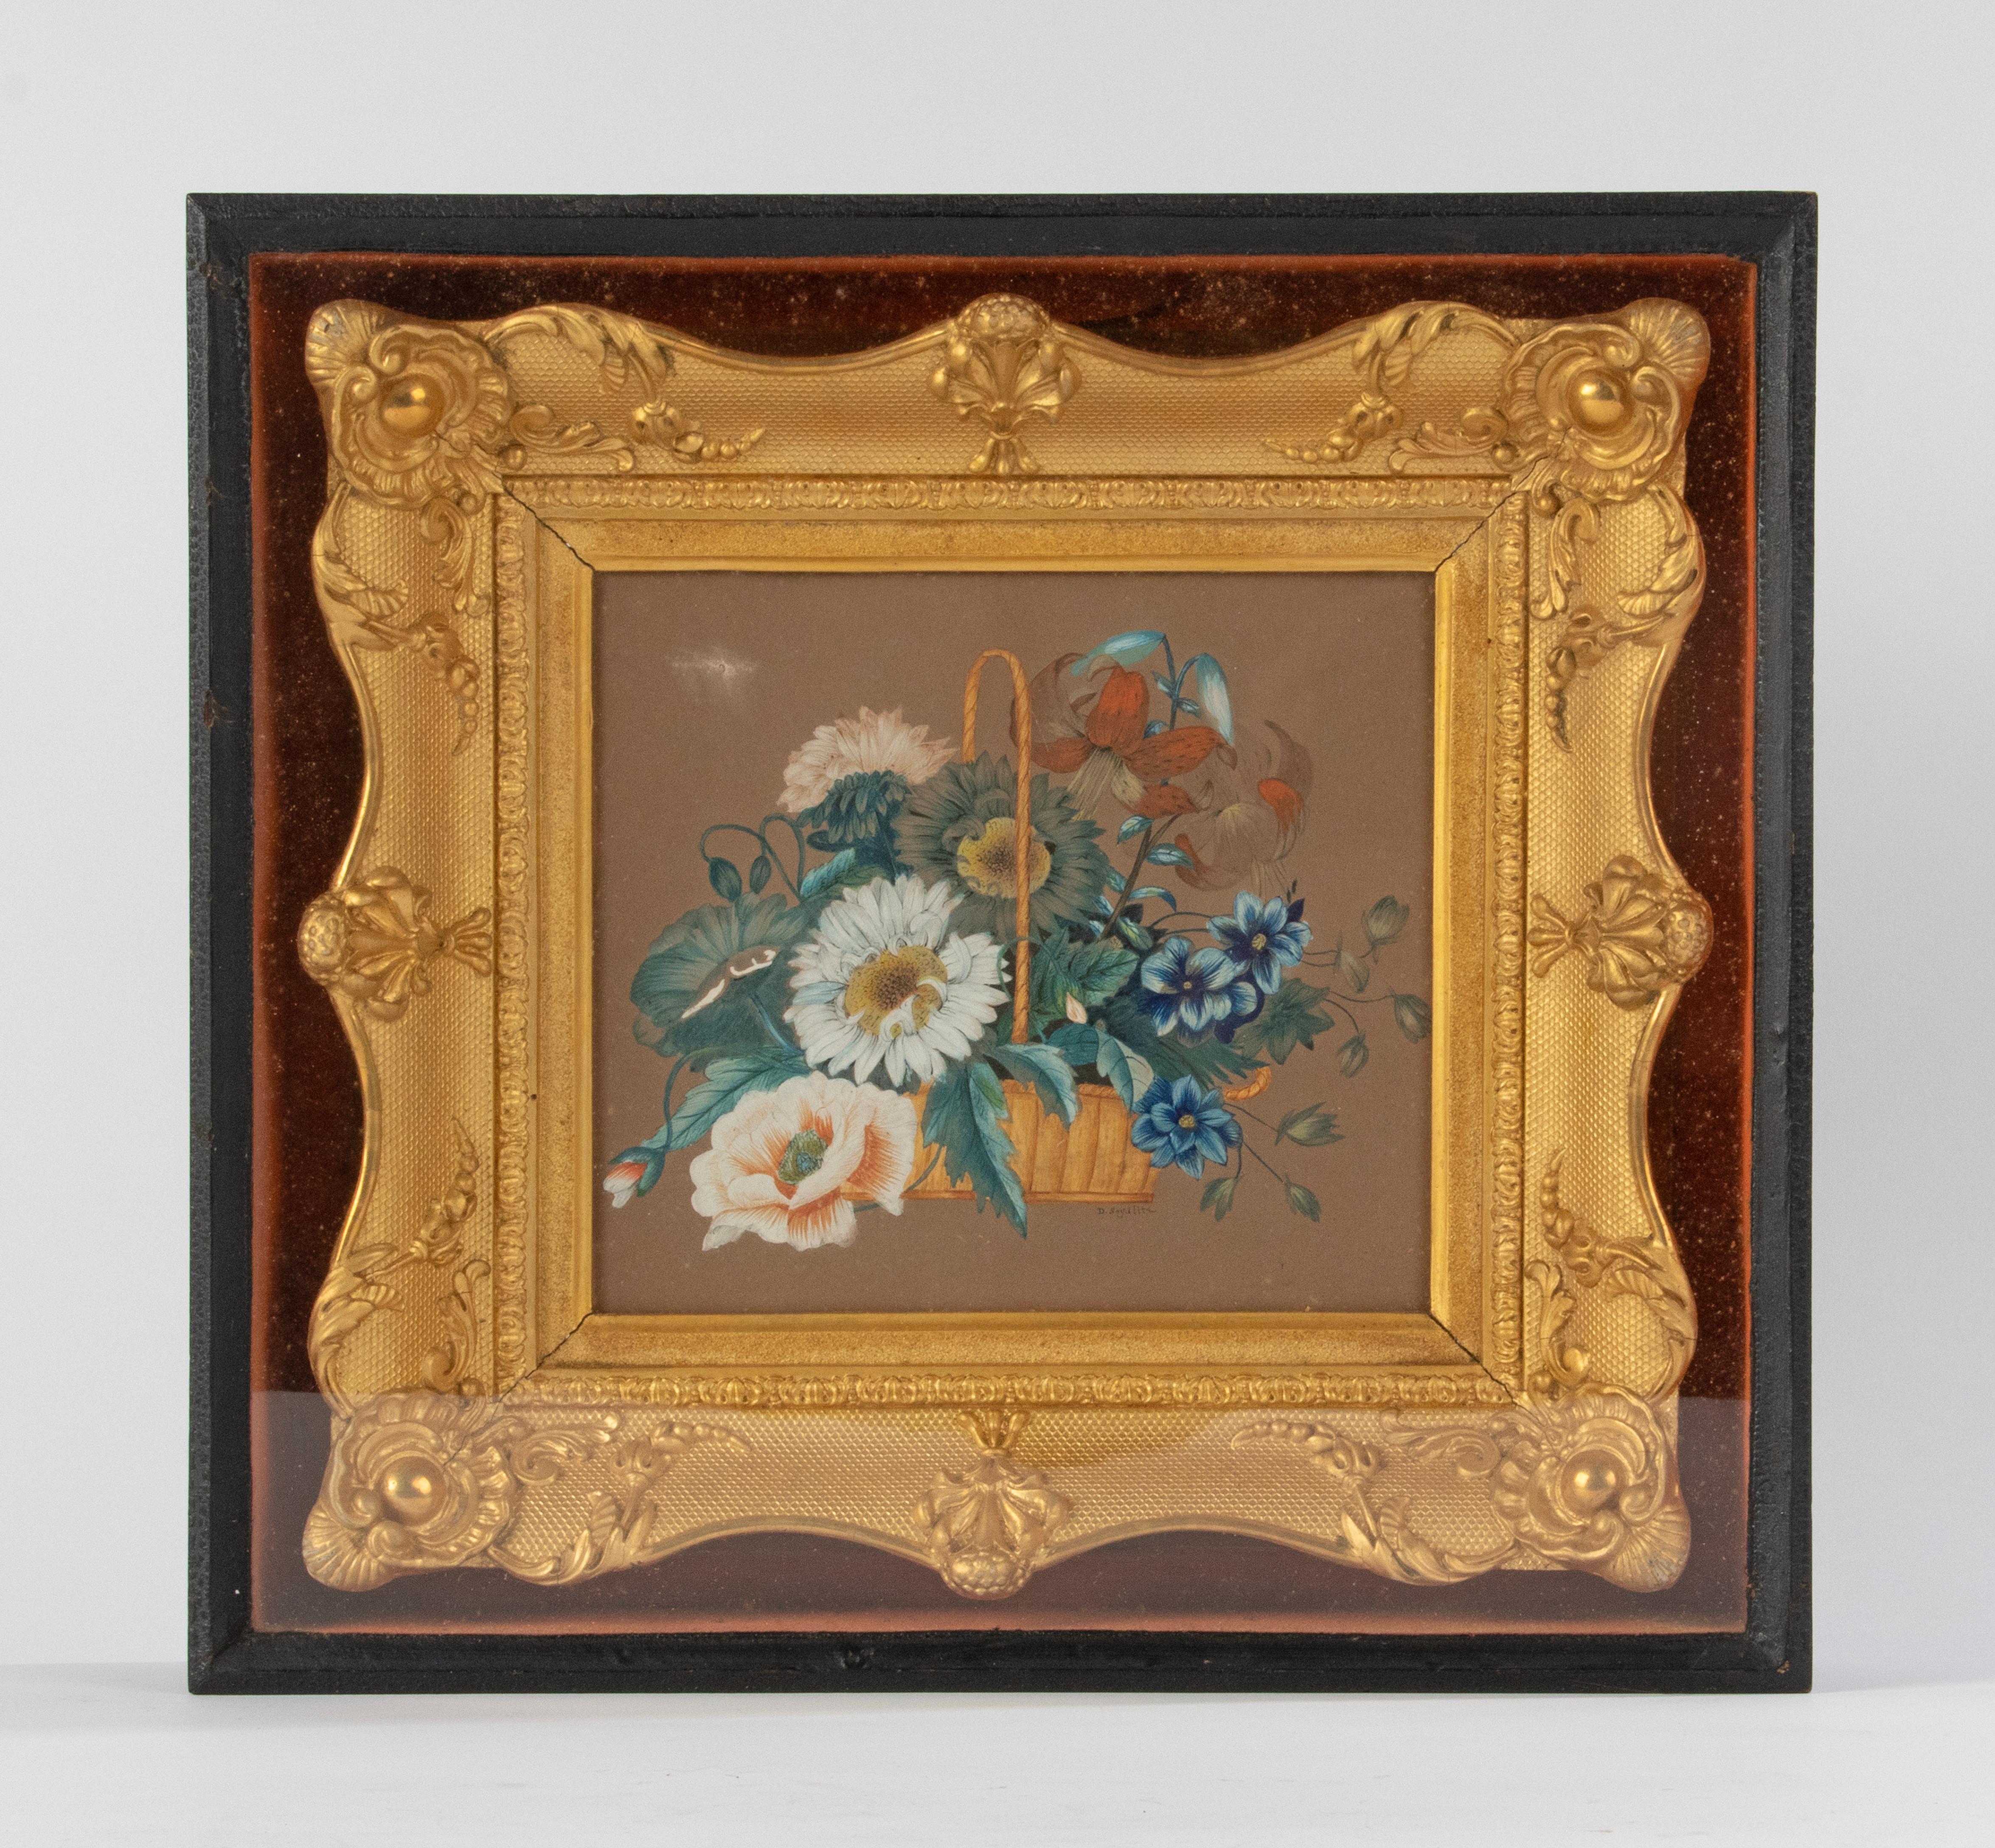 Antikes Gouache-Gemälde (Aquarell) eines Korbes mit Blumen, gemalt auf Papier. Signiert rechts unten: D. Seydlitz. Herkunft unklar, wahrscheinlich Belgien, um 1870-1880. In einem blattvergoldeten Rahmen im französischen Règence-Stil. Das Ganze